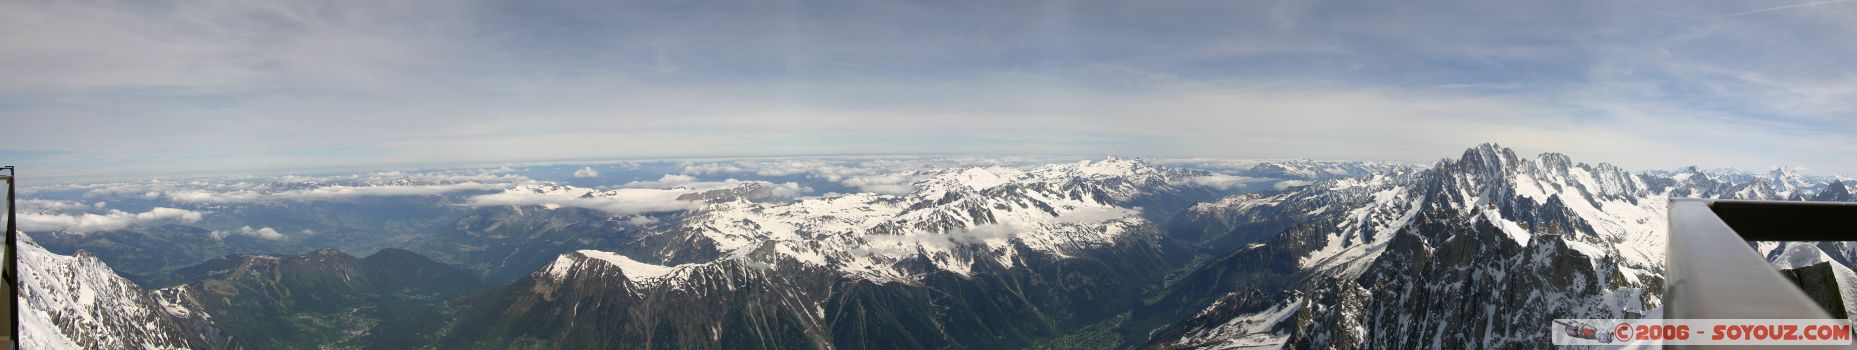 Panoramique sur la valle de Chamonix
